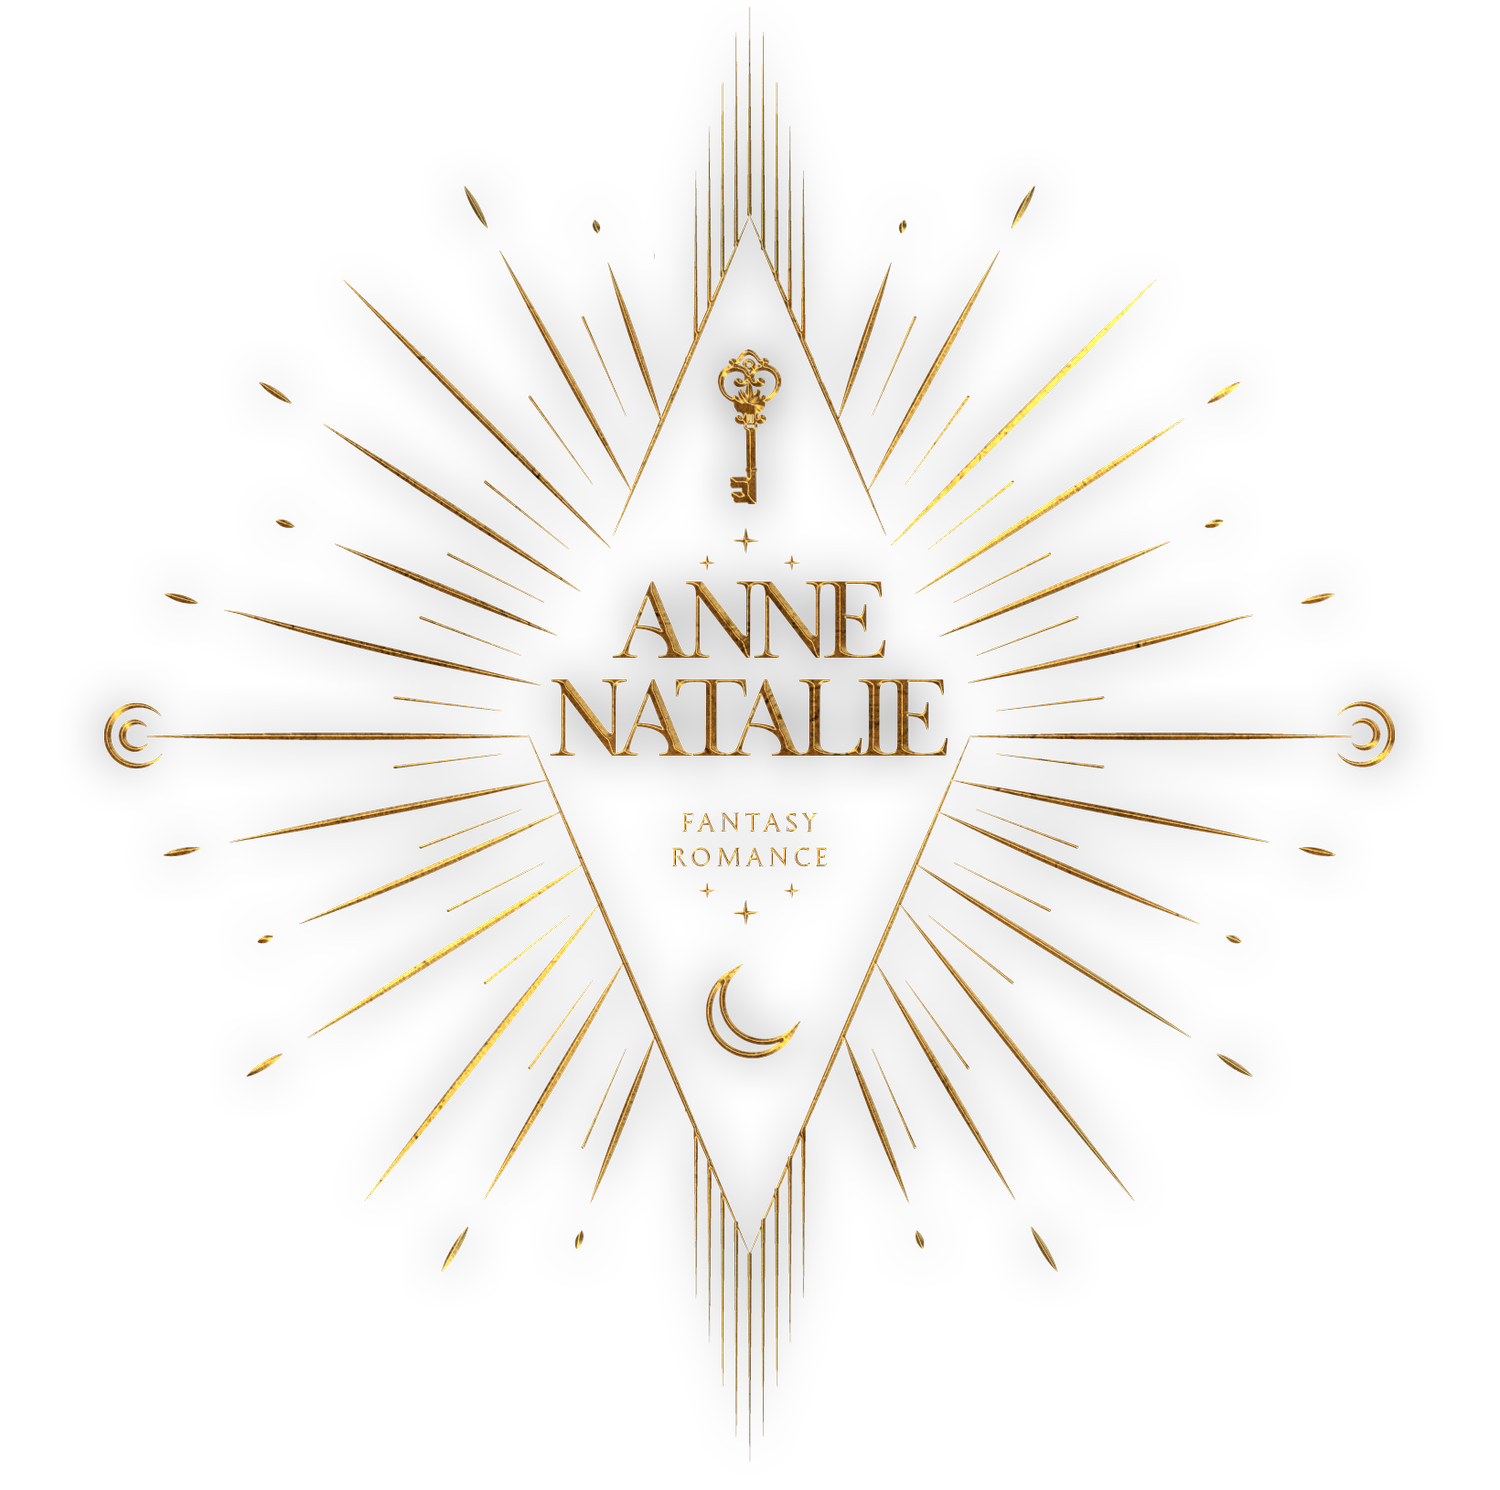 Anne Natalie